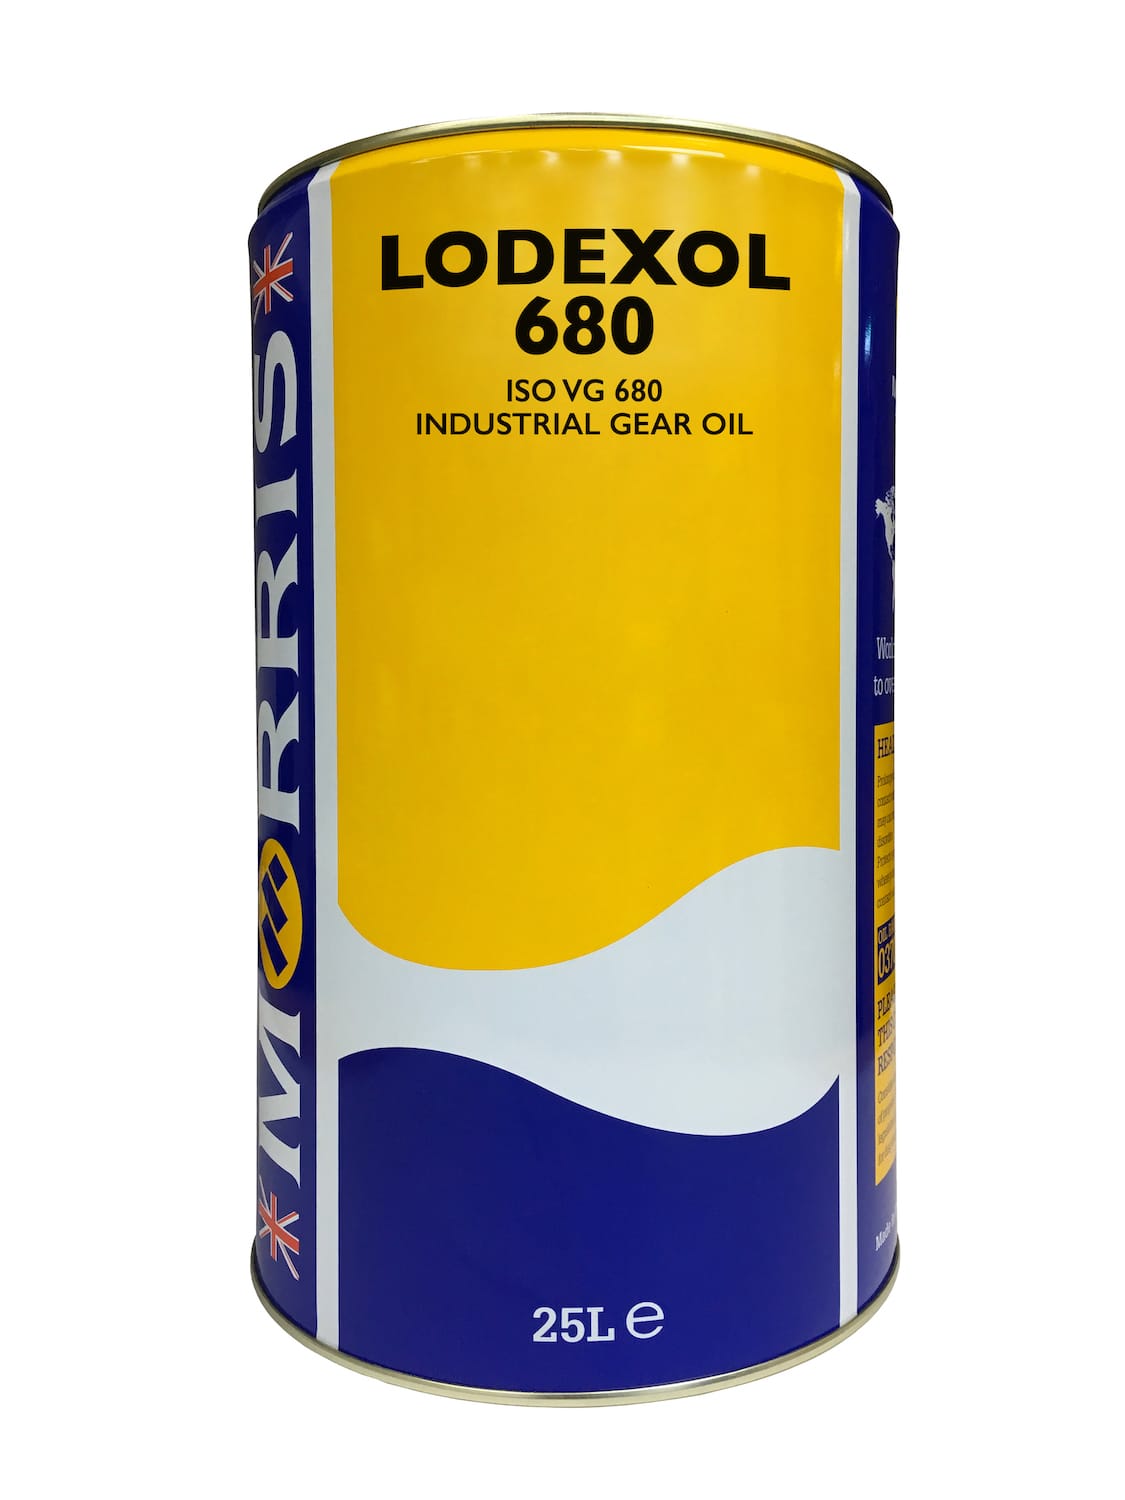 Lodexol 680